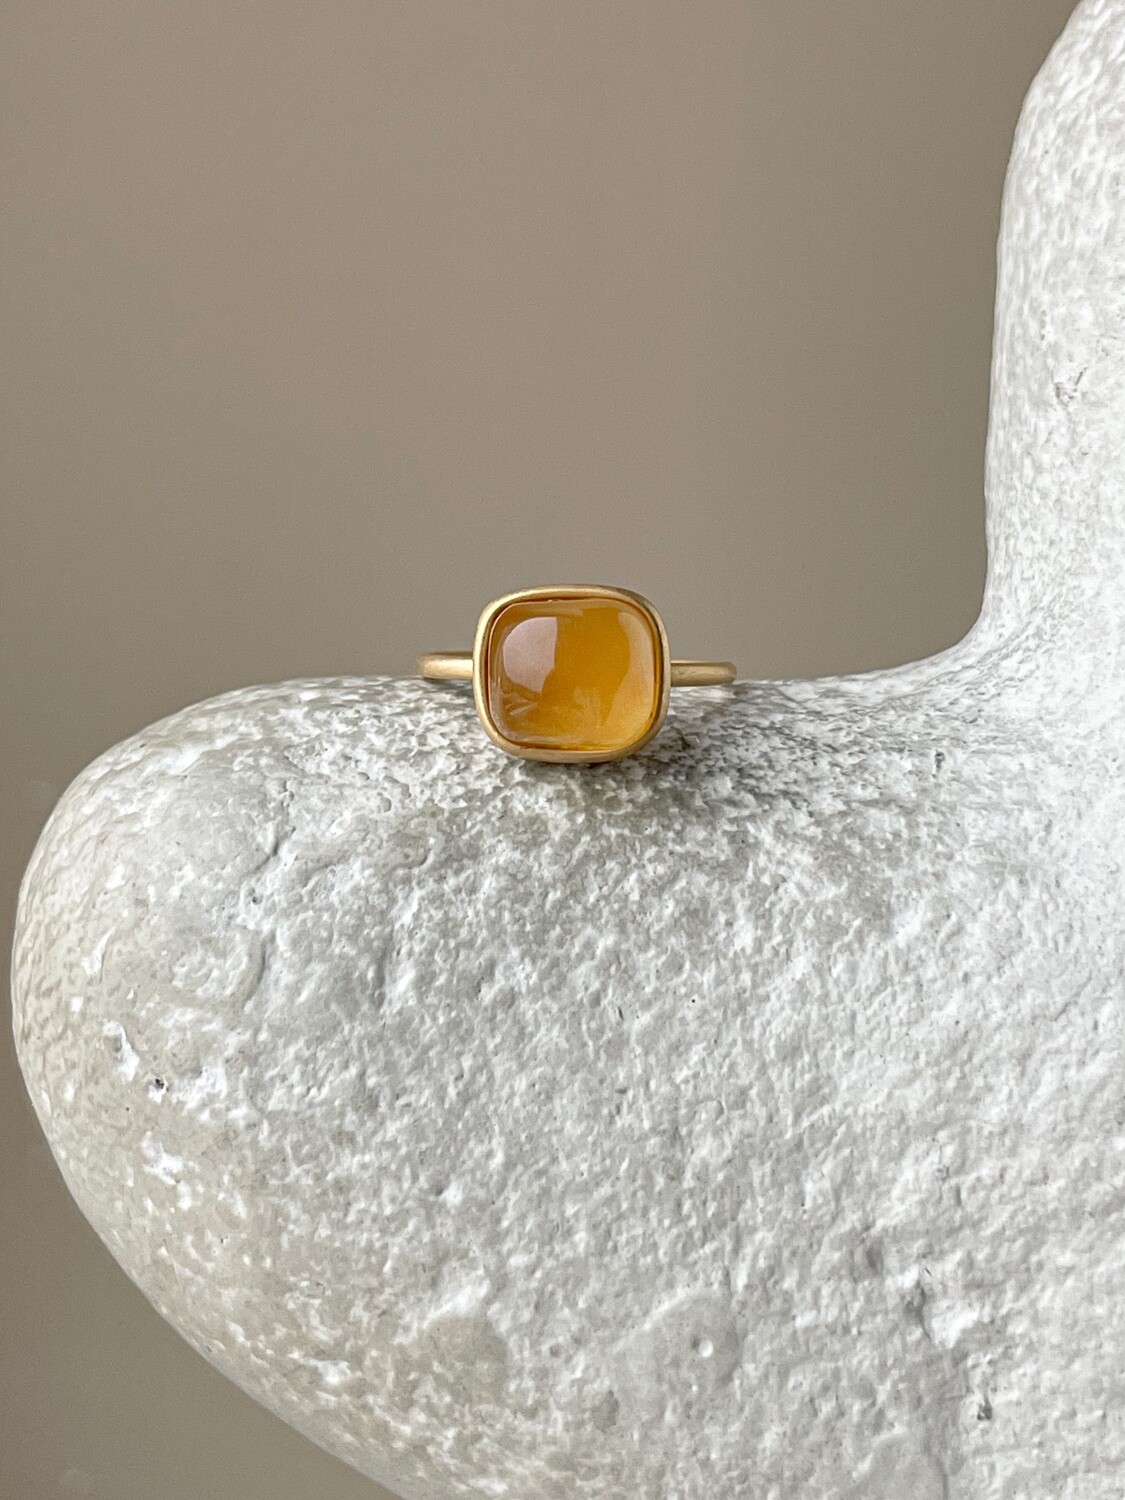 Тонкое кольцо с медовым янтарем, размер 16